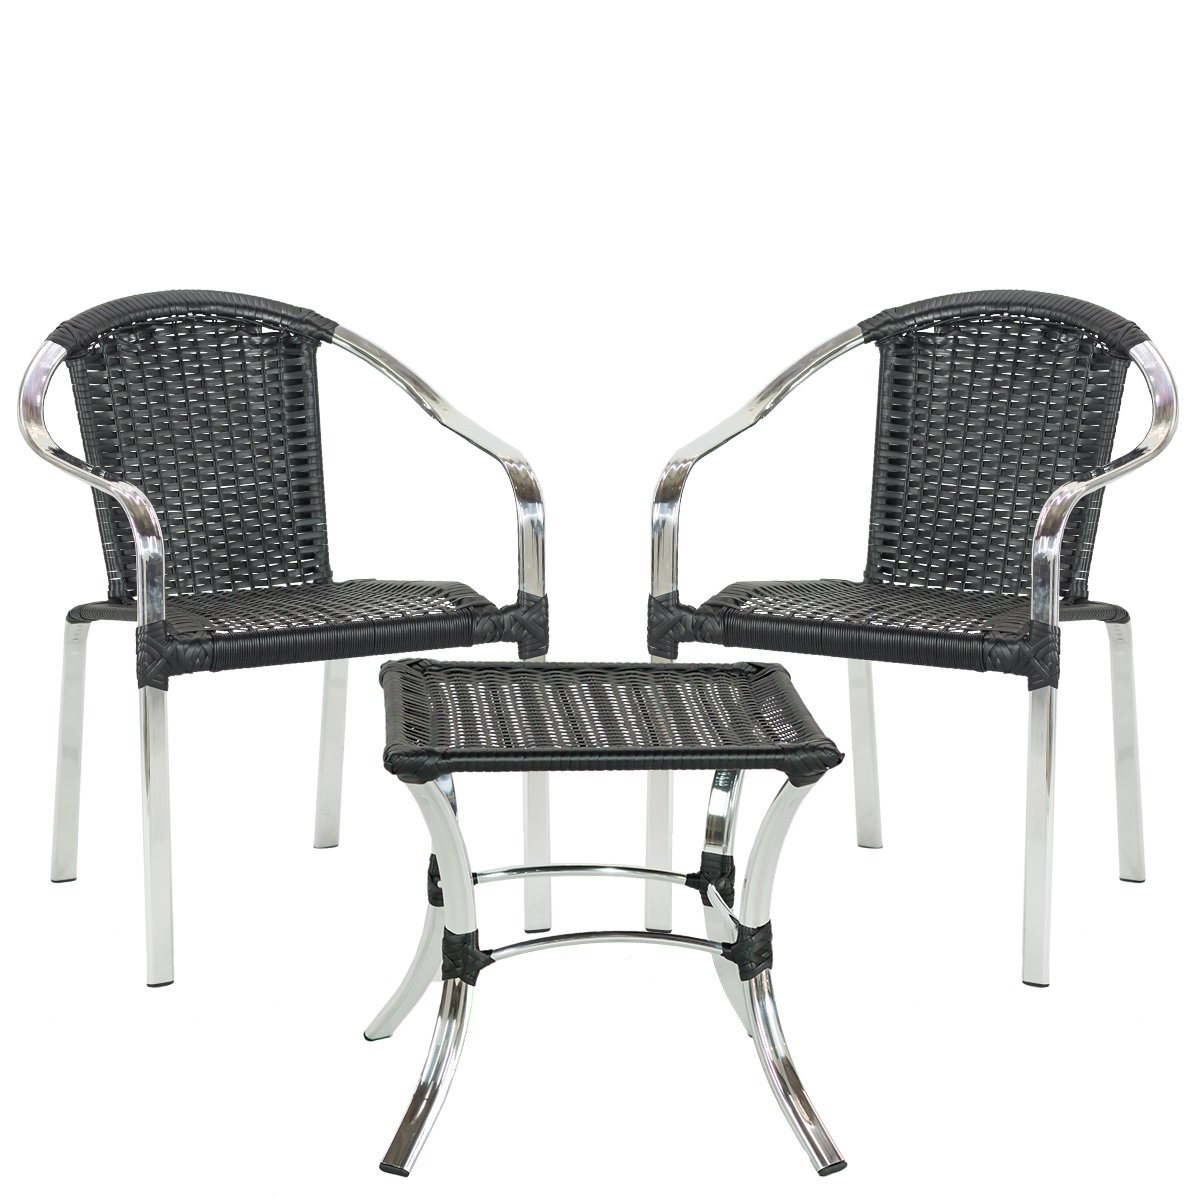 Jogo 2 Cadeiras + Mesa de alumínio Tóquio área interna e externa, piscina, sacada, fibra sintética - - 1